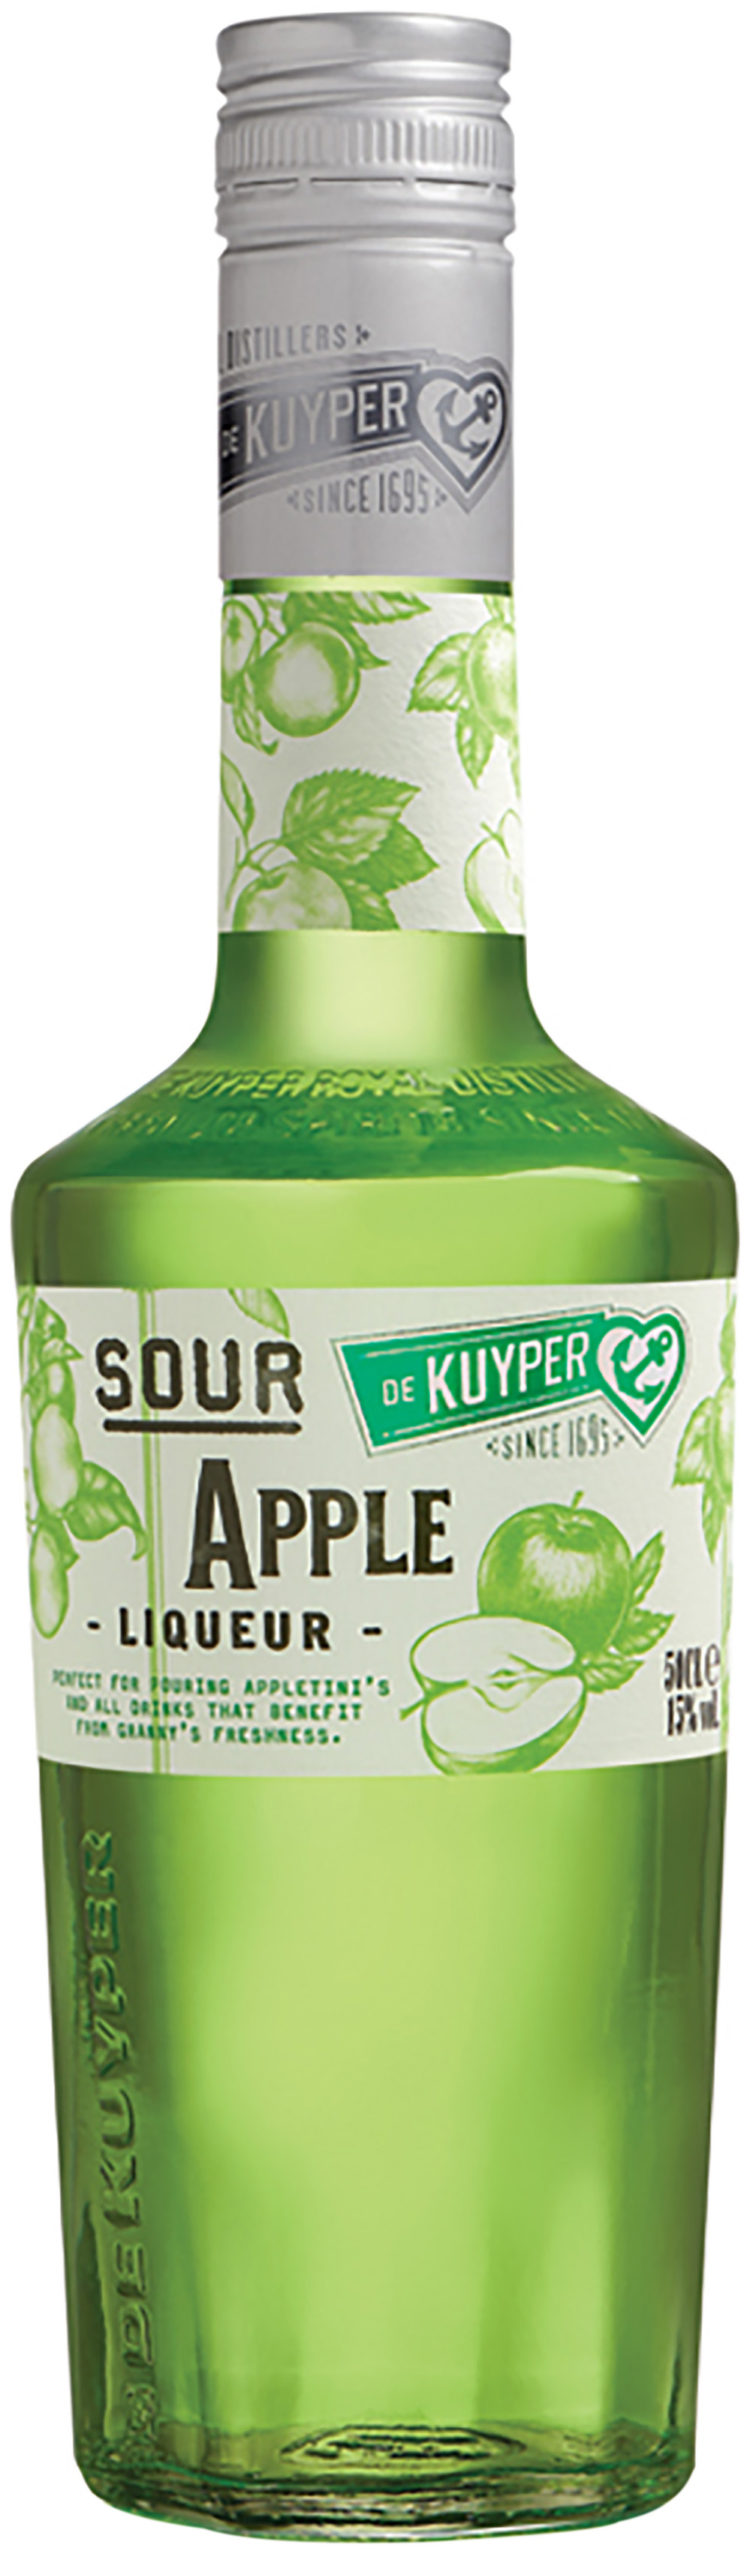 De Kuyper Sour Apple